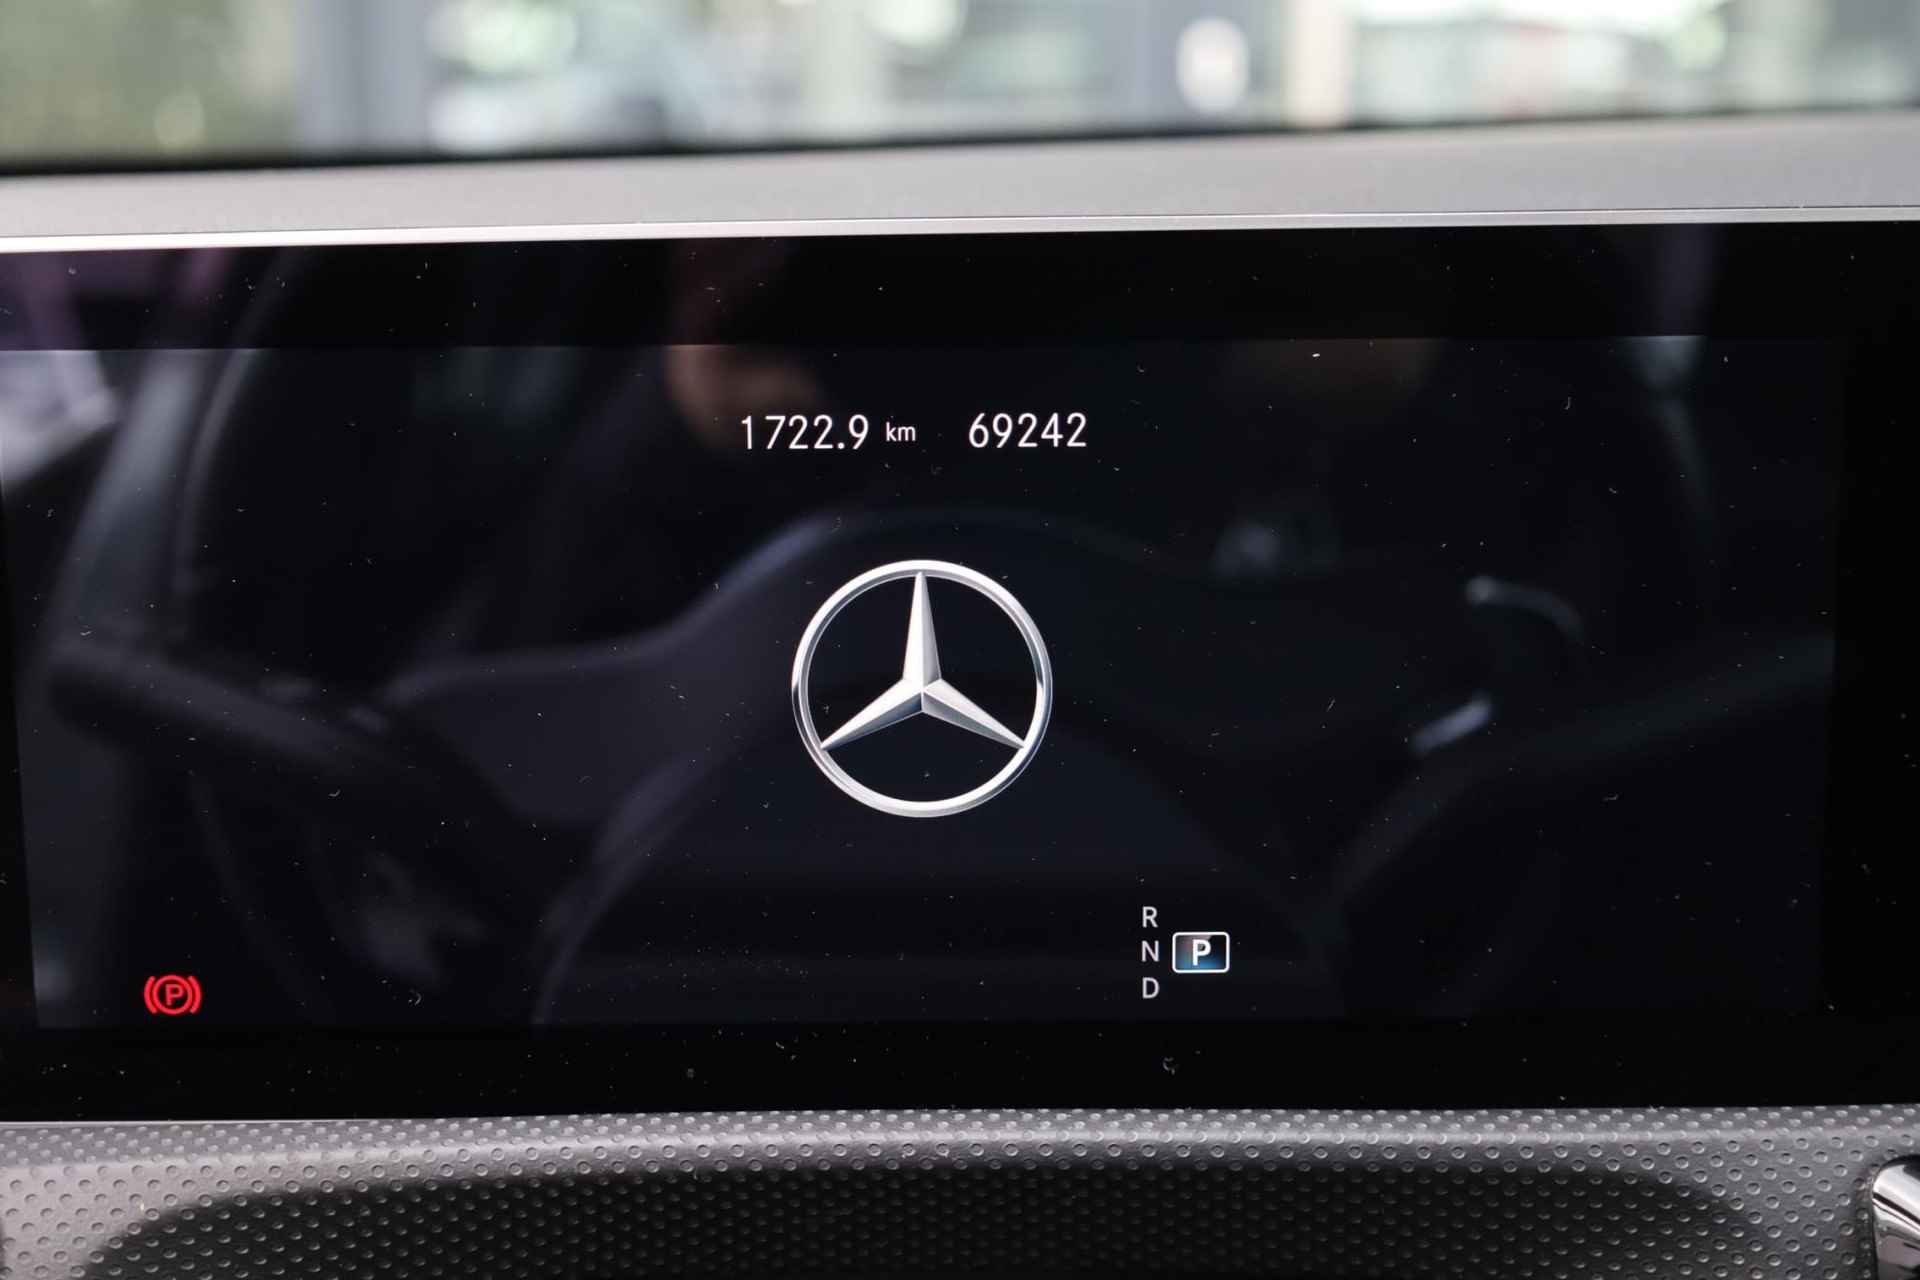 Mercedes-Benz A-klasse 200 Business Solution AMG 120KW/163PK automaat, Leder / alcantara, winterset LMV digitaal dashboard, navigatie, LED verlichting voor en achter, 18" LMV, stoelverwarming, parkeersensoren voor en achter, AMG bumpers - 17/44